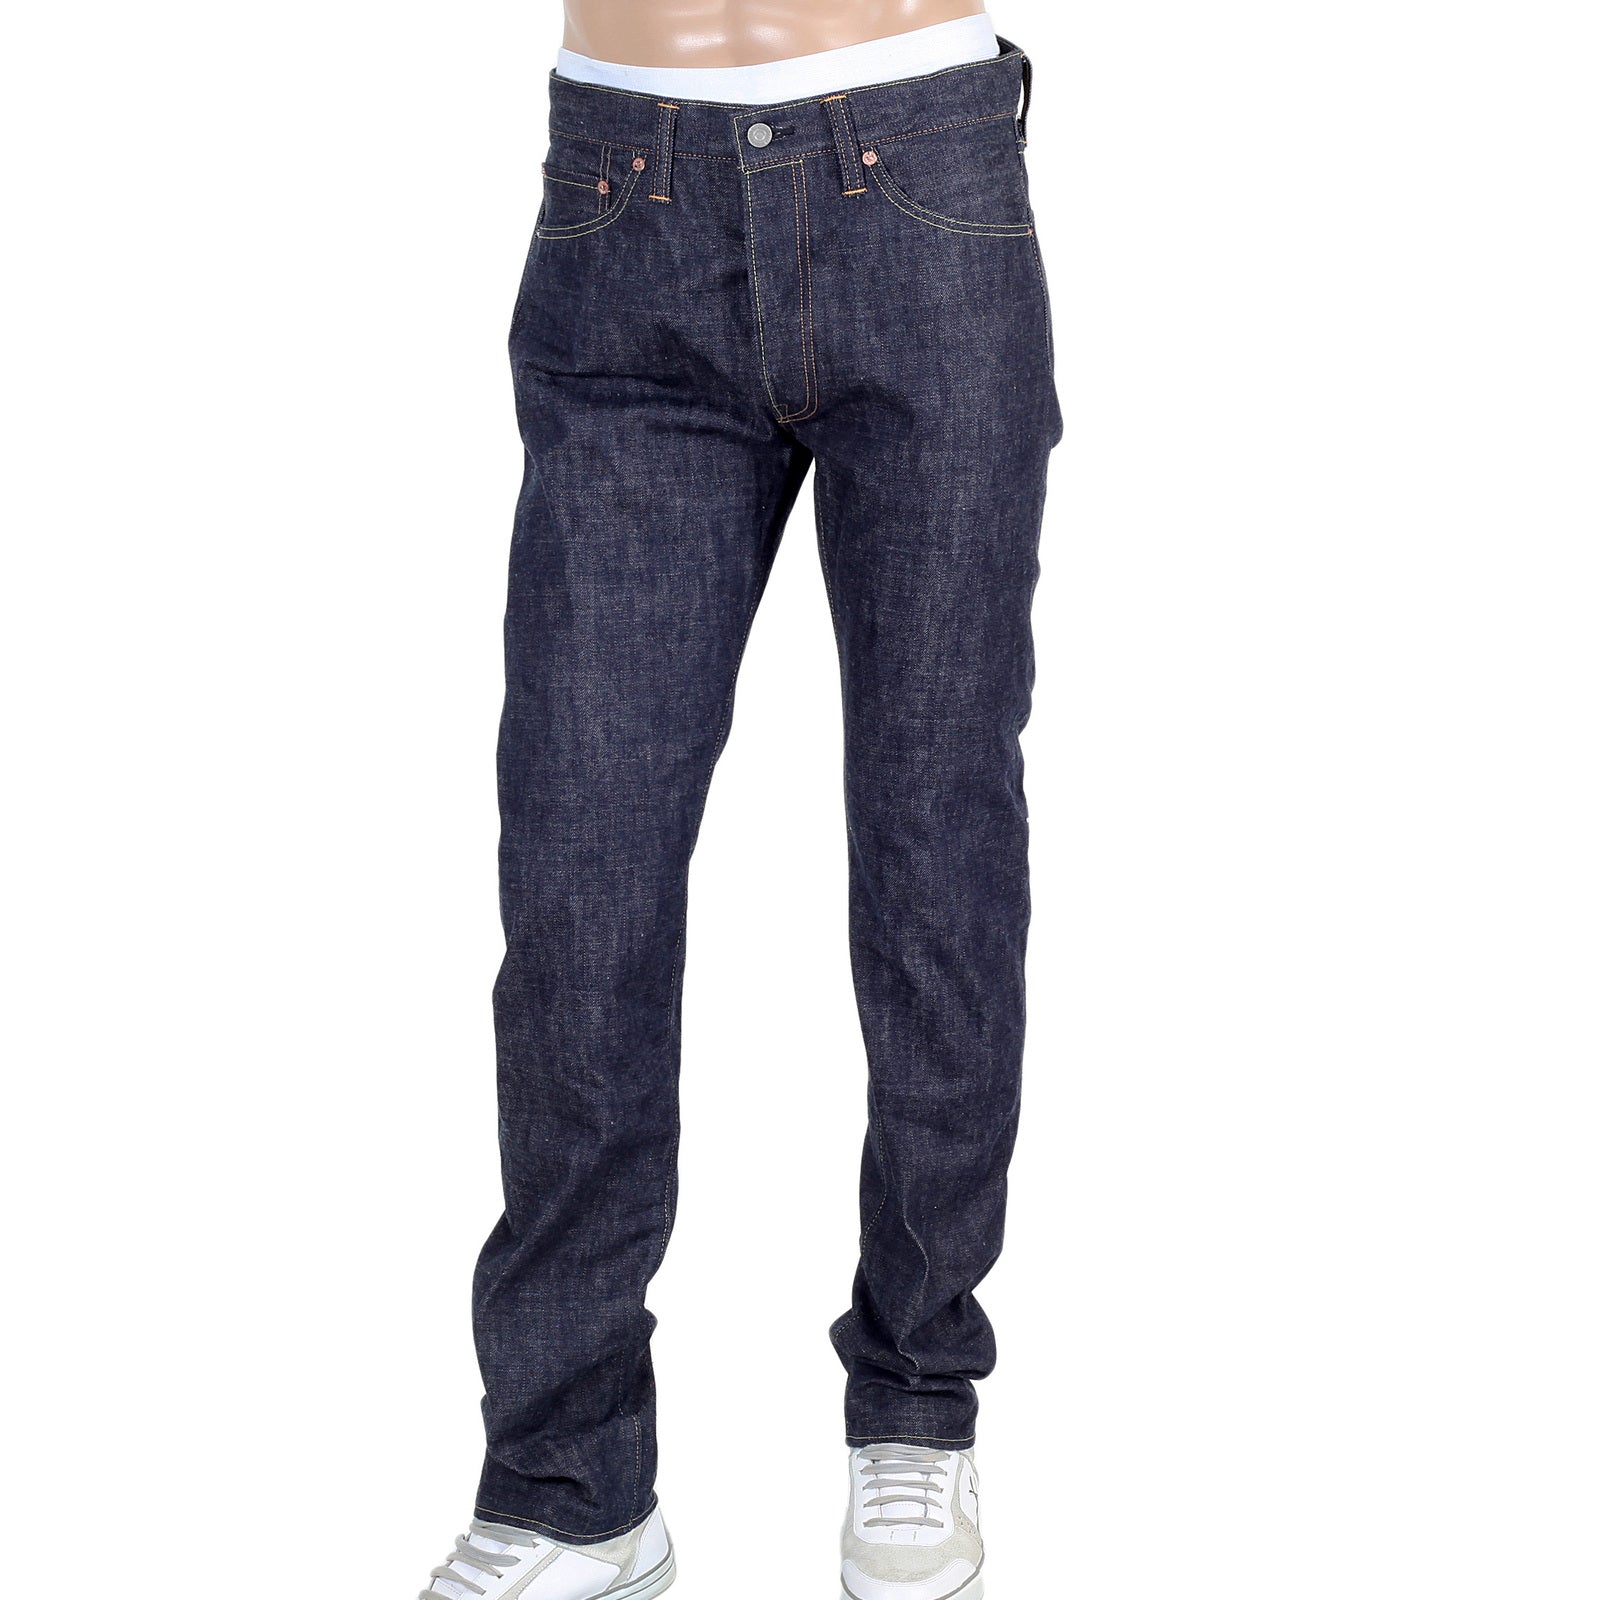 Buy Blue Jeans for Men by Tom Tailor Online  Ajiocom